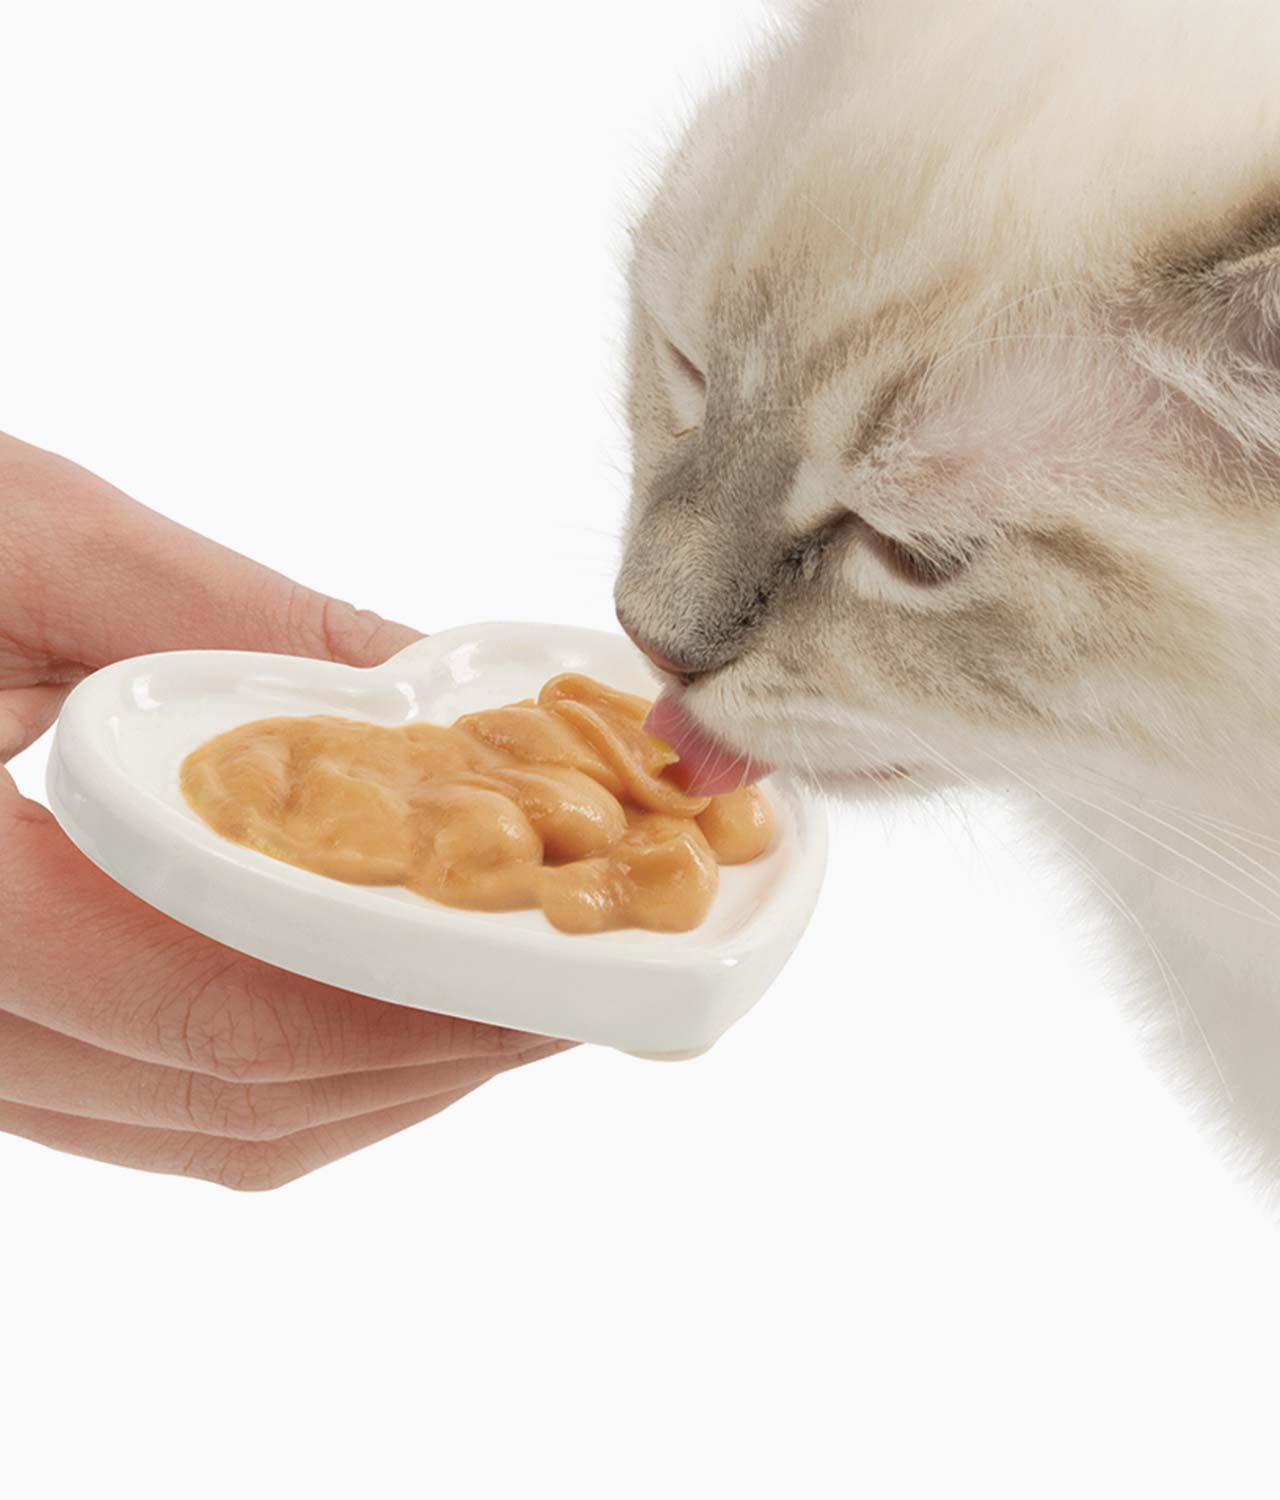 Kot zlizujący smakołyk Creamy z naczynia do karmienia